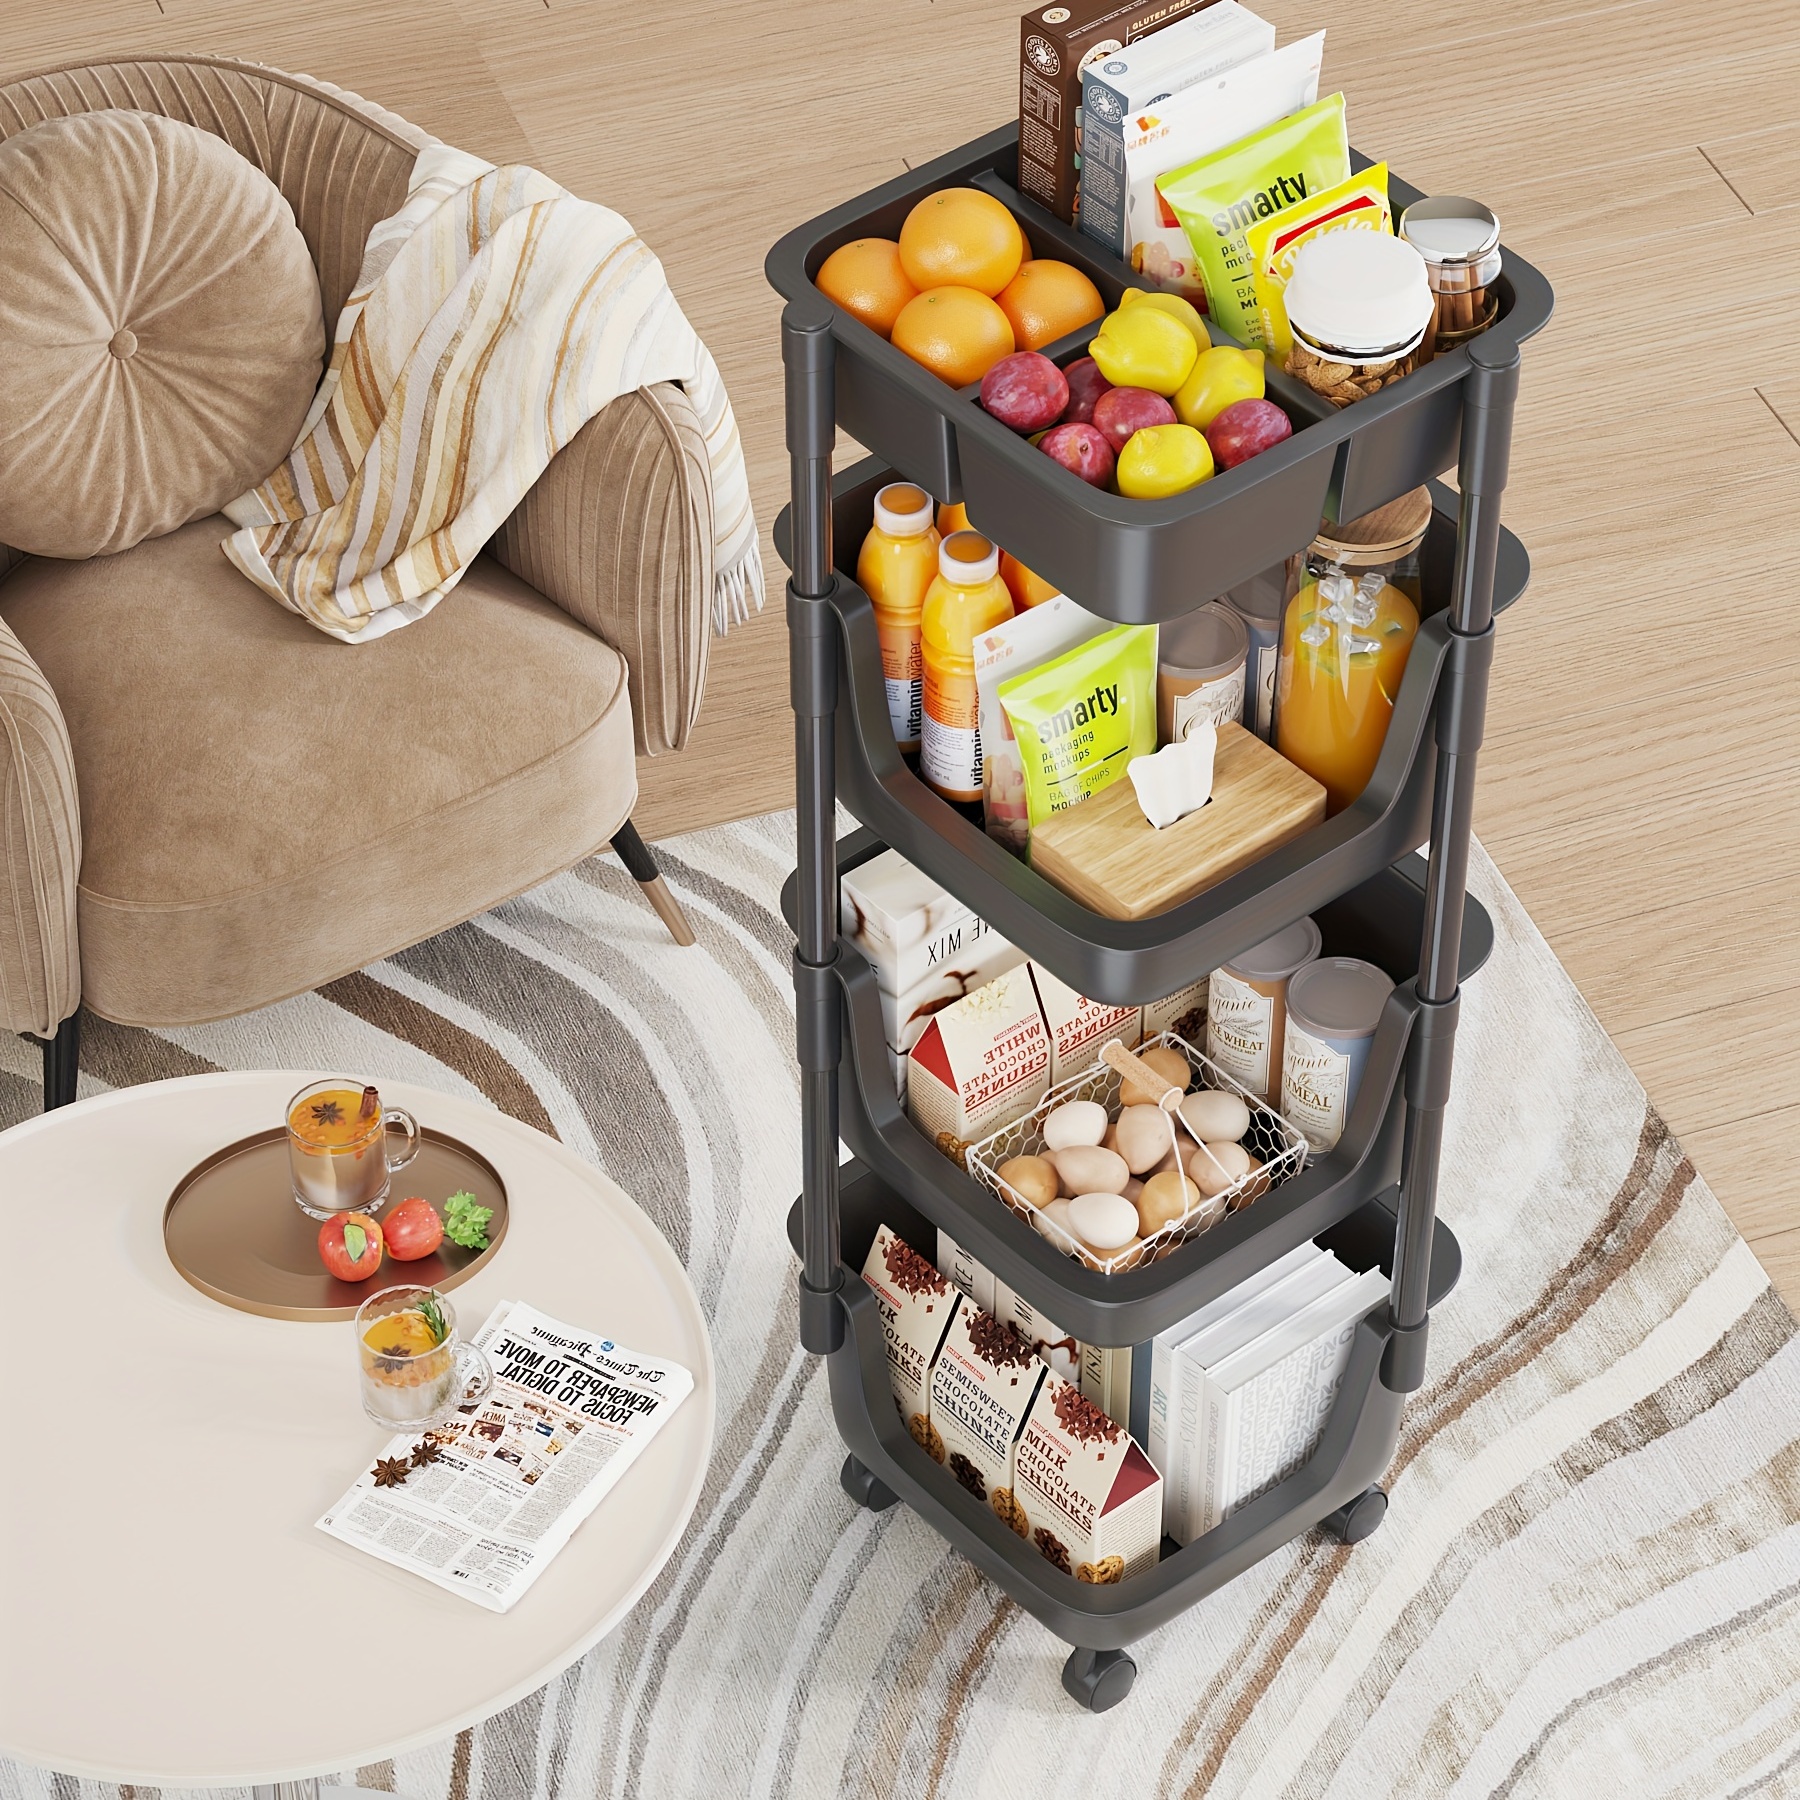 Carrito de almacenamiento cesta de frutas cesta de frutas, 4 ~ 6 niveles de  almacenamiento de cocina de frutas verduras y despensa organizador de